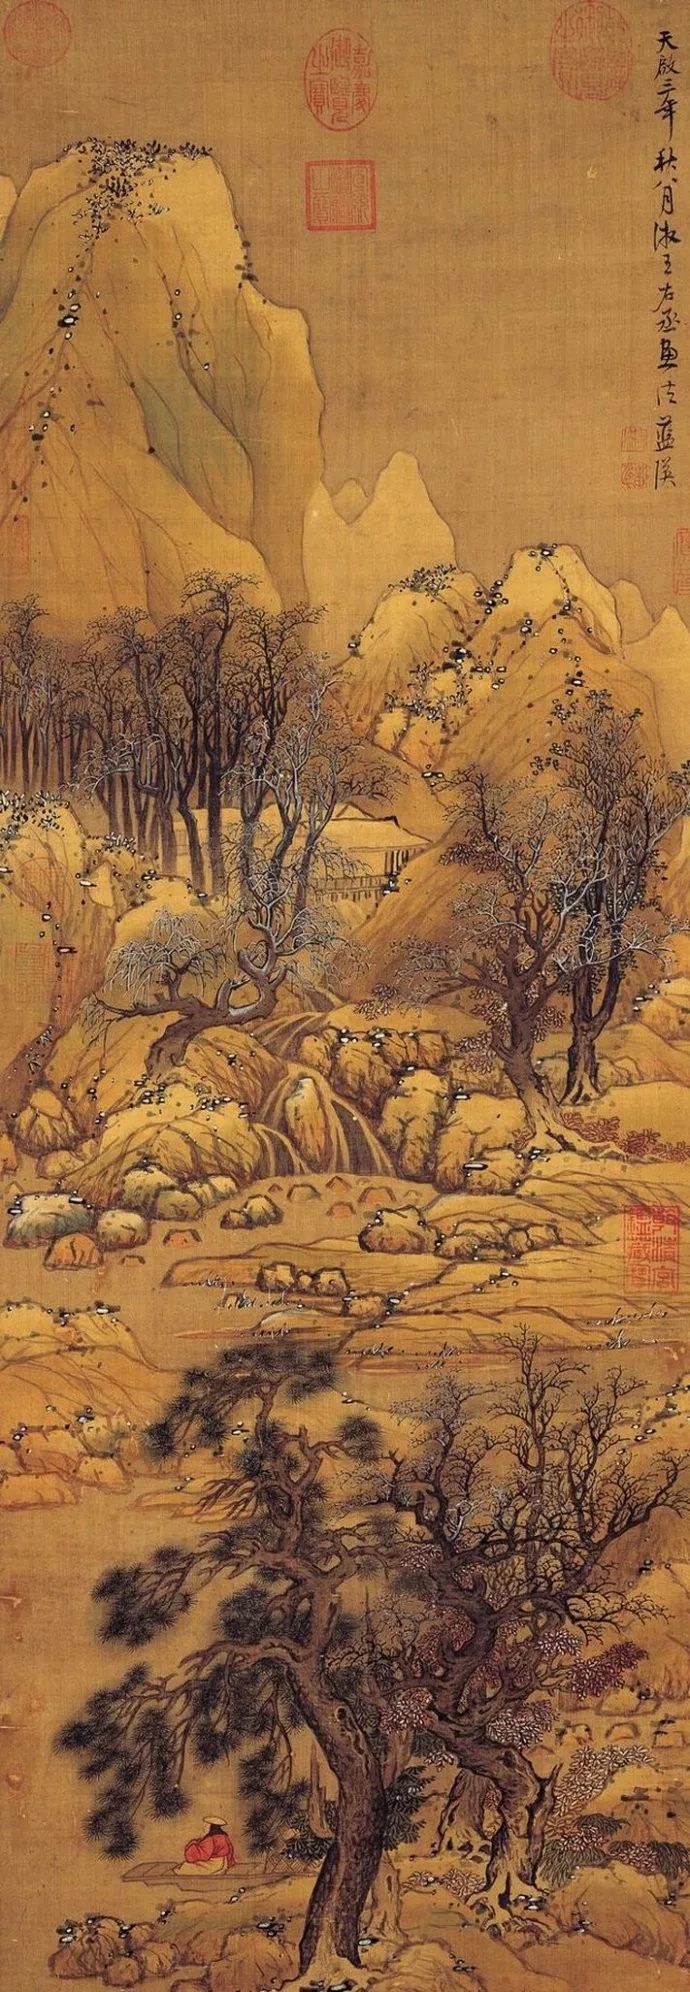 元王蒙《摹王维辋川图》(局部) 现藏美国弗利尔美术馆